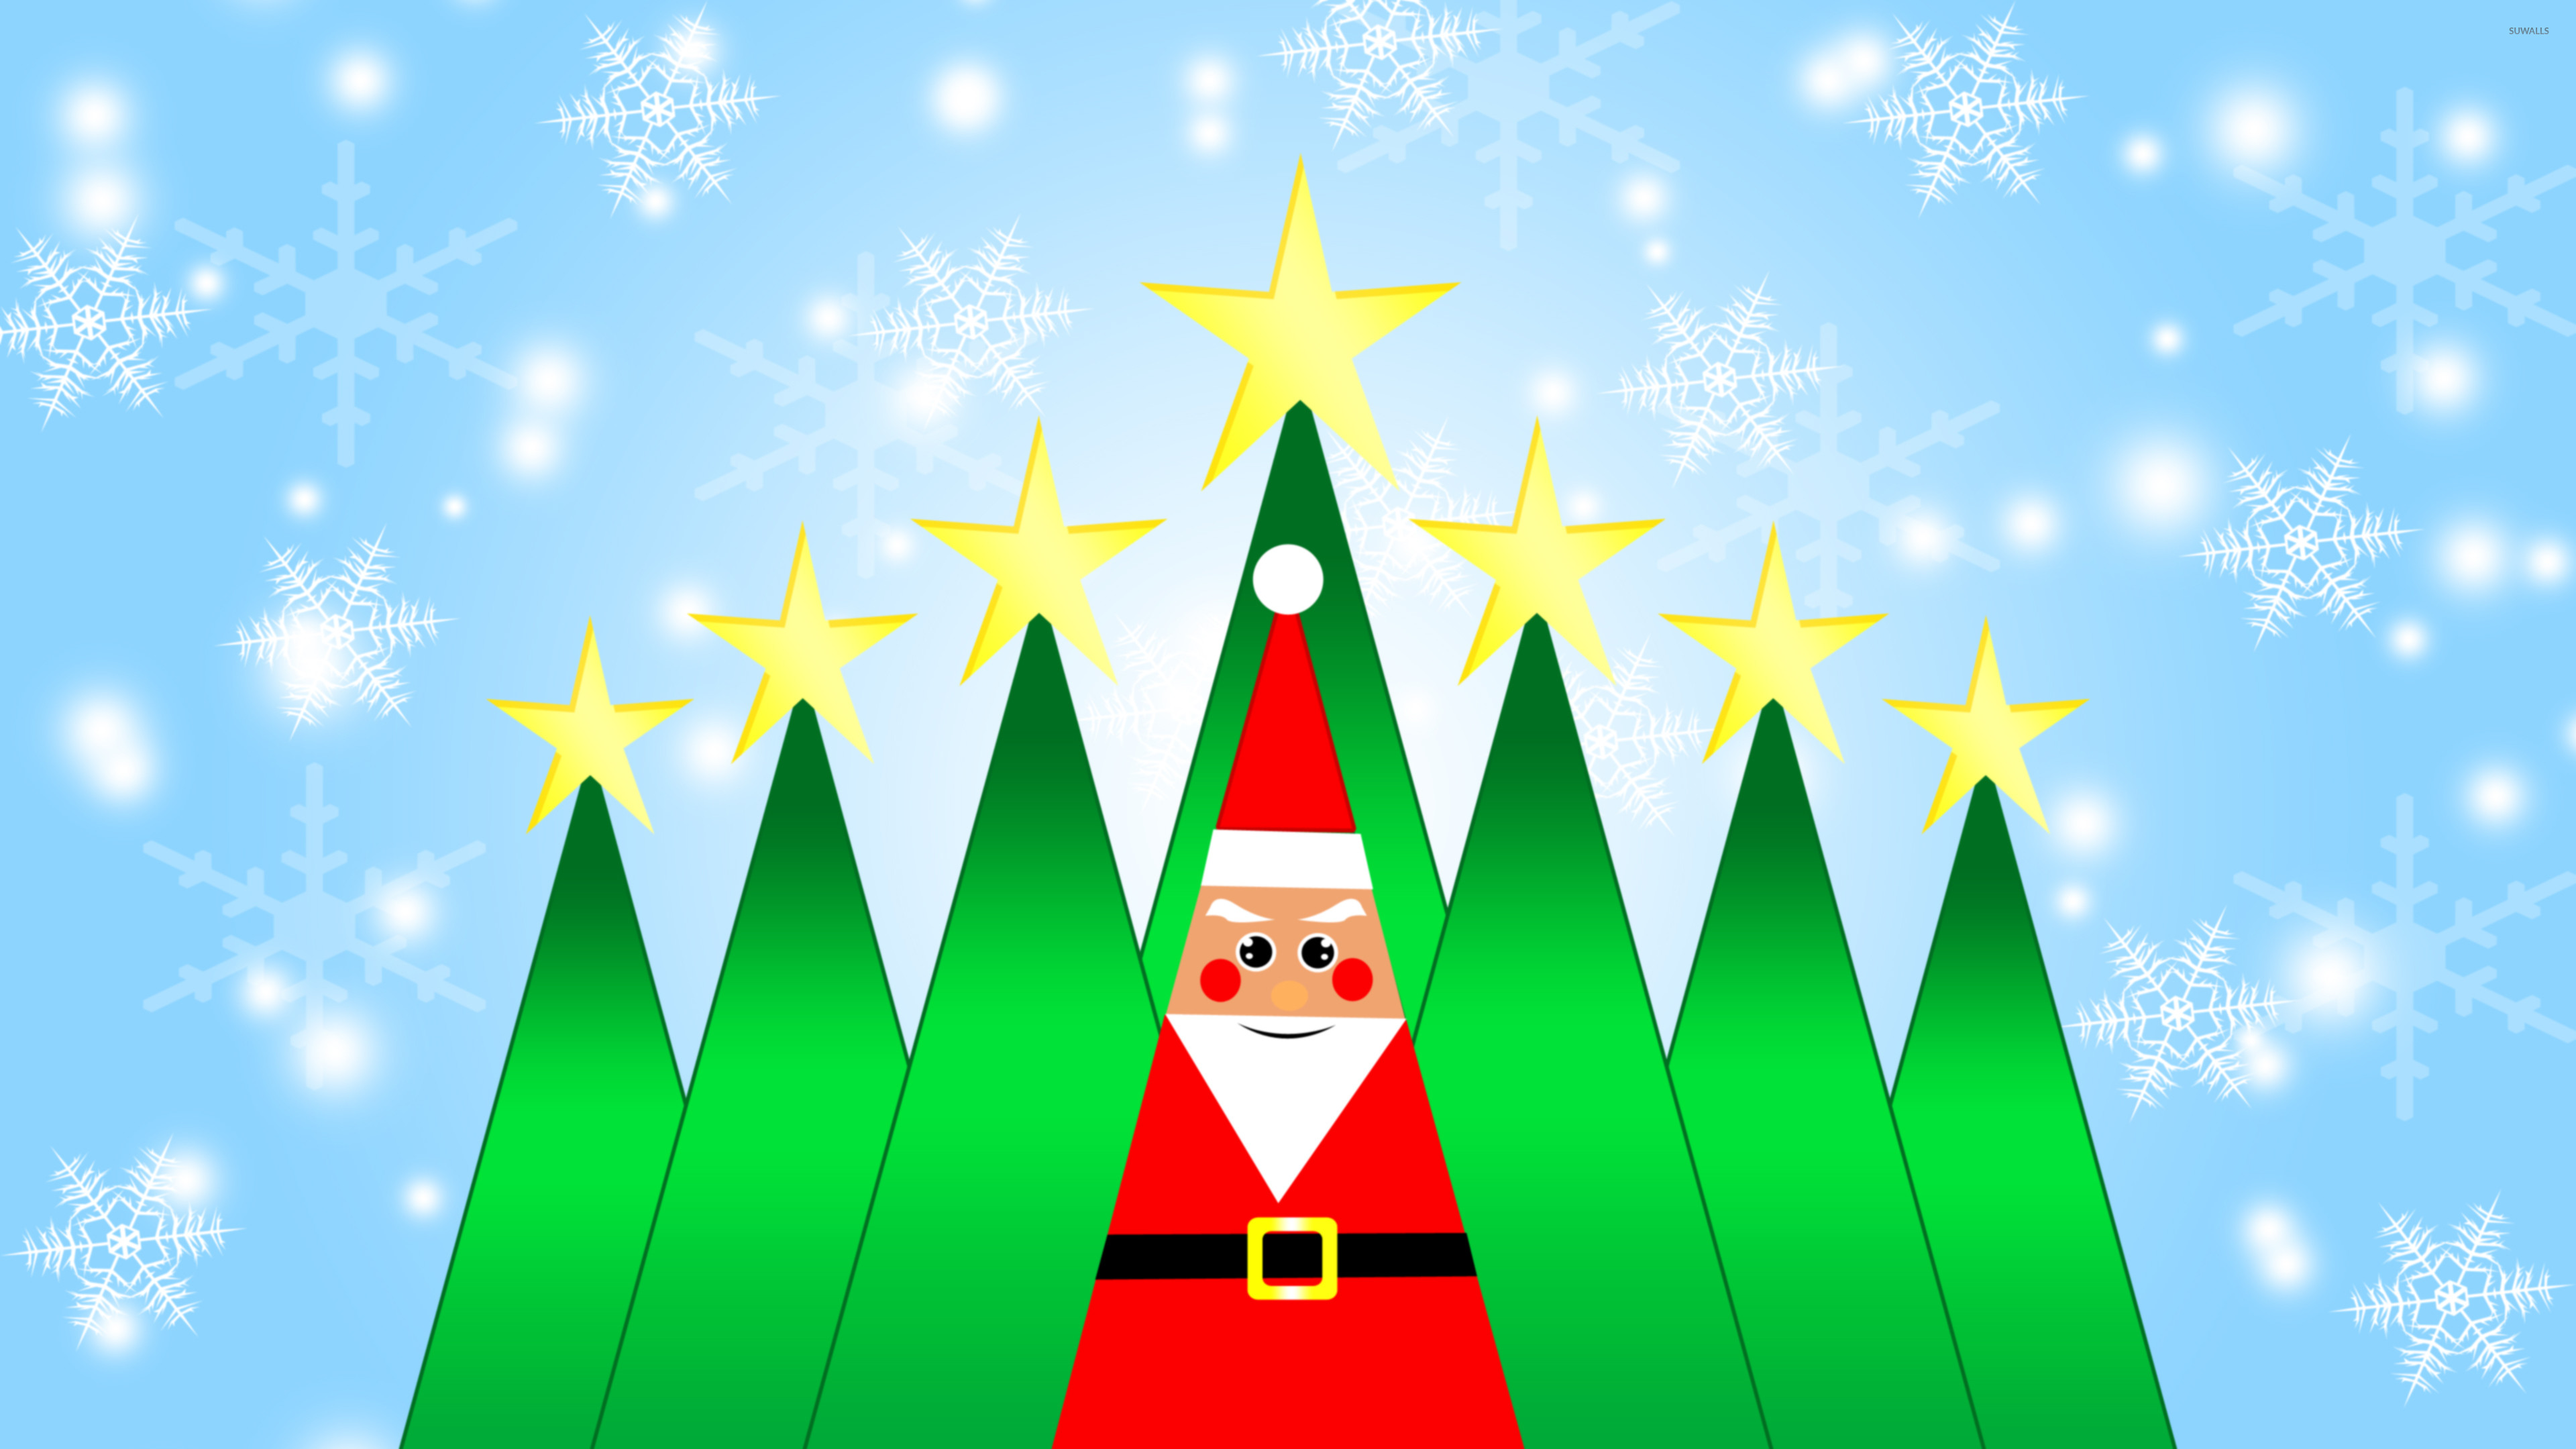 Santa Claus and Christmas trees wallpaper